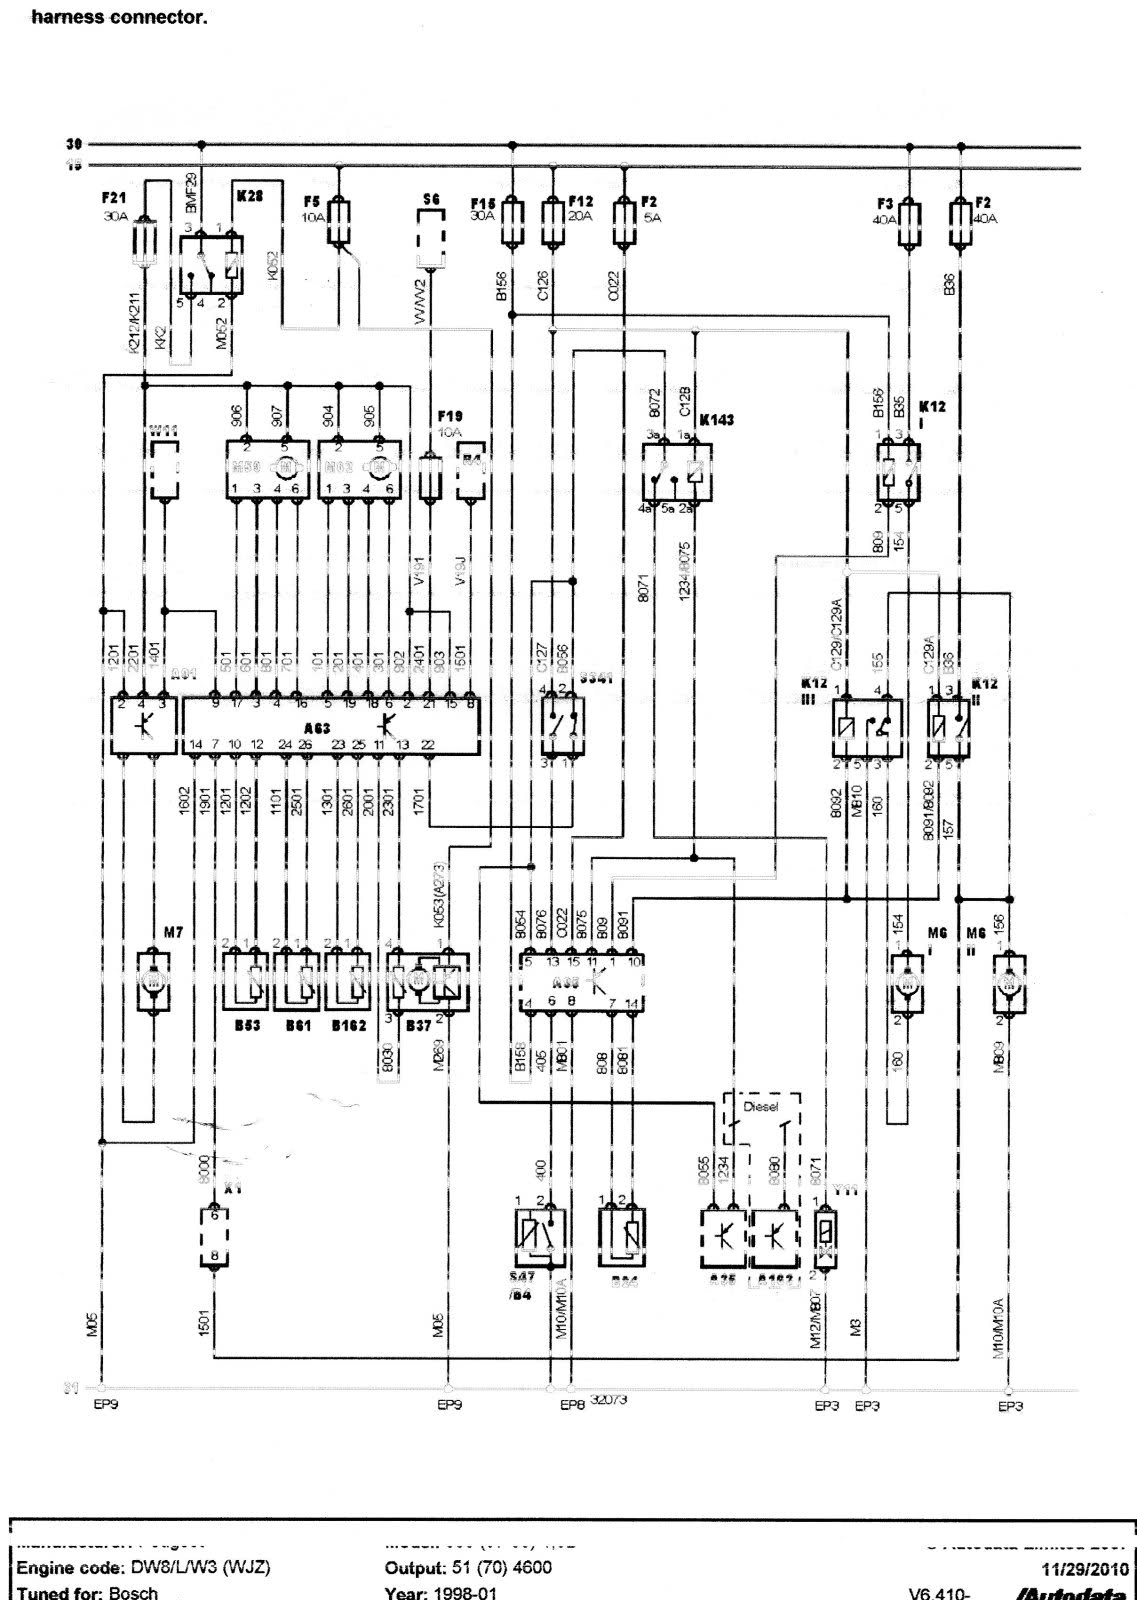 Air Conditioner Wiring Diagram Pdf Peugeot Ac Wiring Diagrams Wiring Diagram Img